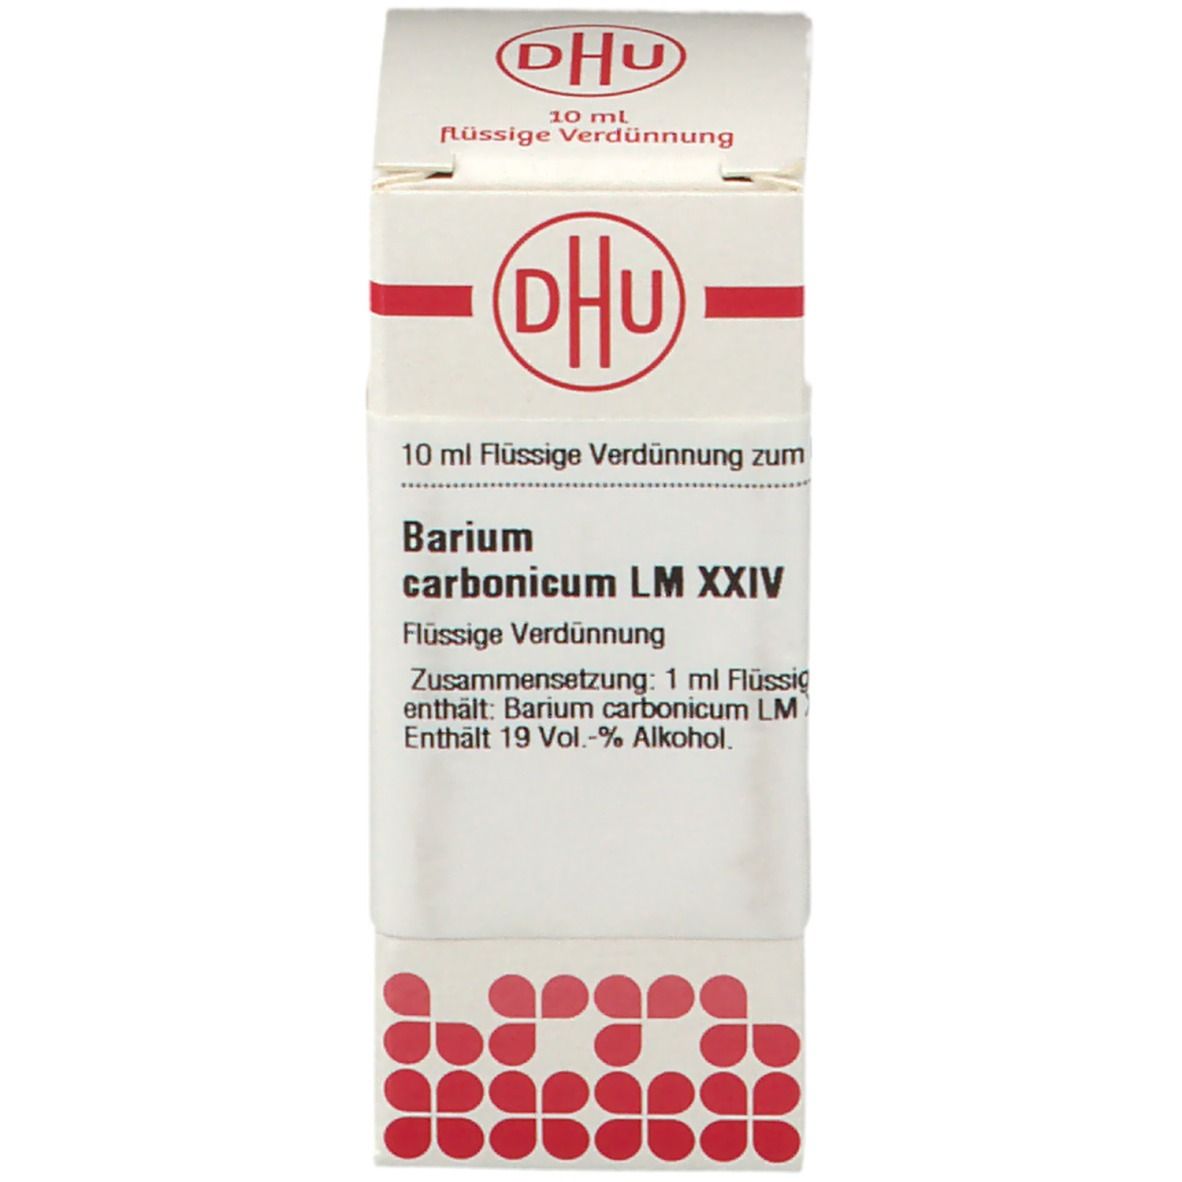 DHU Barium Carbonicum LM XXIV